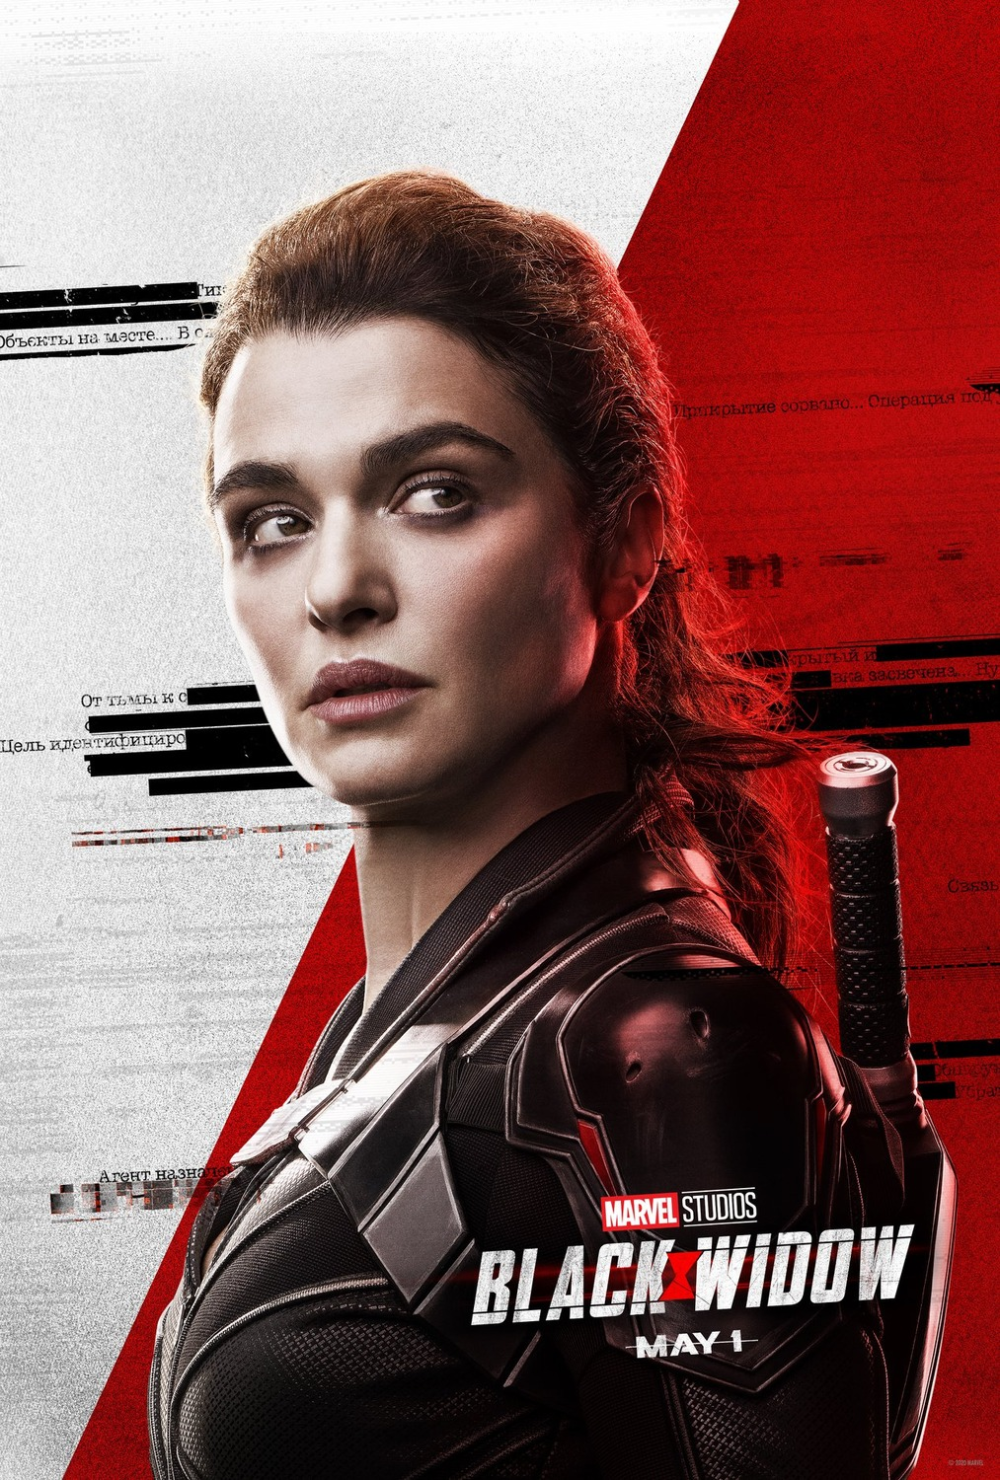 Rachel Weisz in Black Widow poster